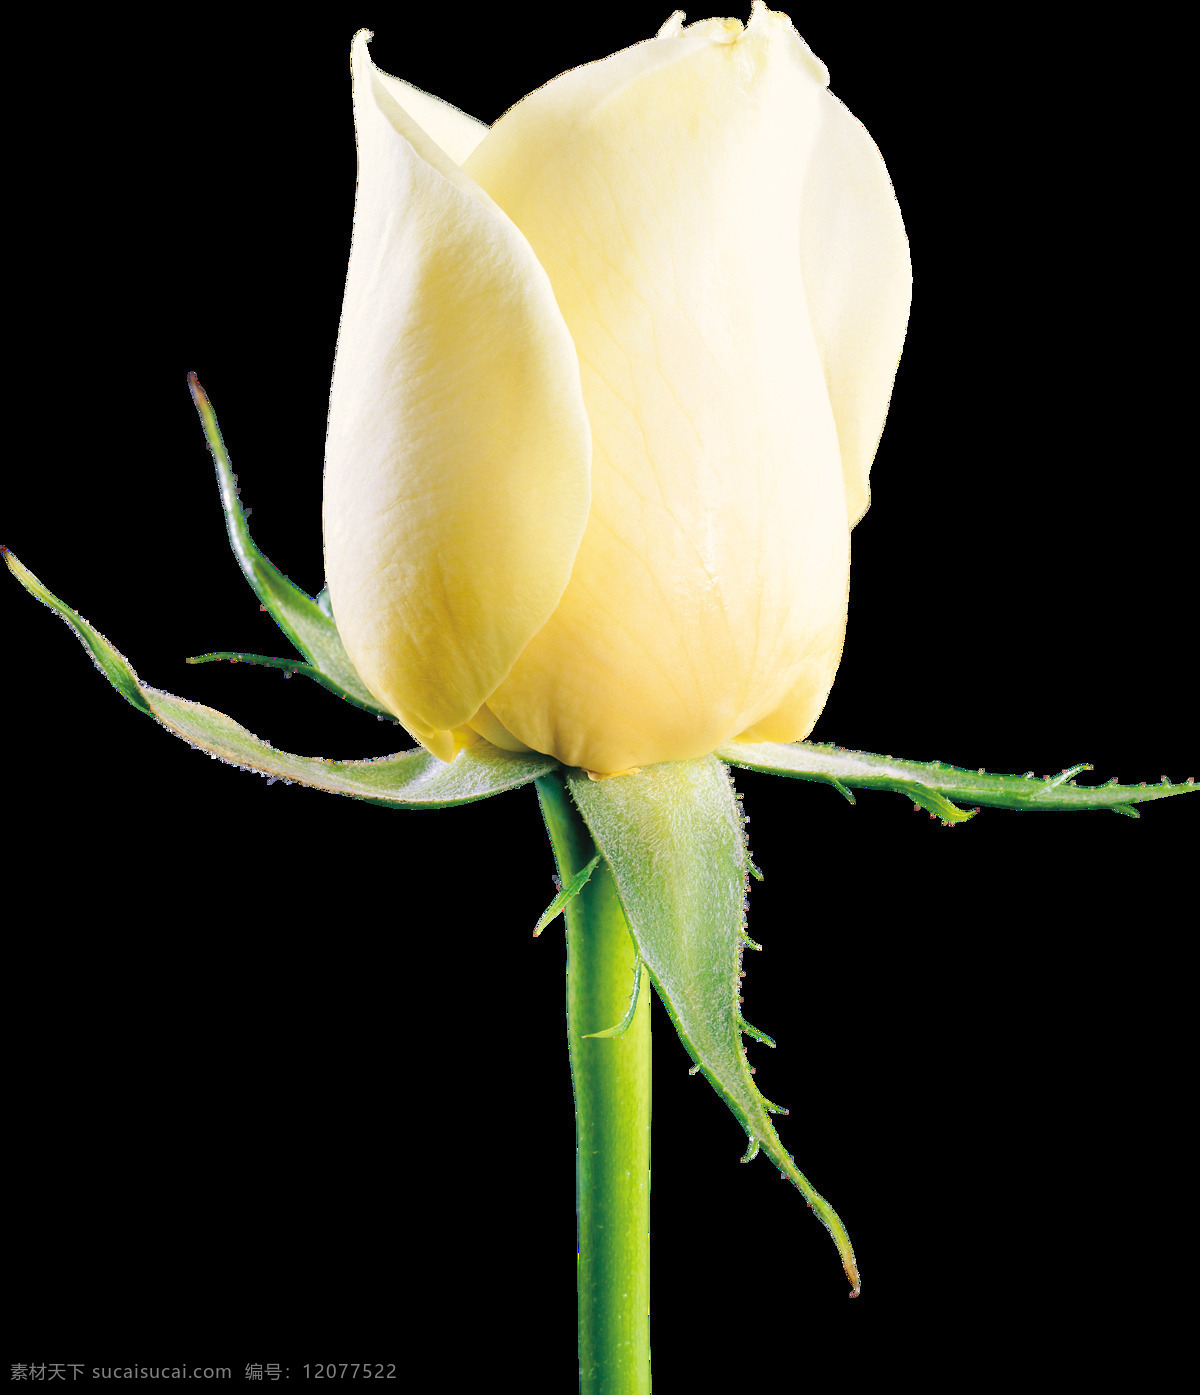 白玫瑰 花 鲜花 花儿 花朵 树叶 绿叶 特写 壁纸 美丽 漂亮 花草 玫瑰摄影 玫瑰图片 玫瑰素材 花类 生物世界